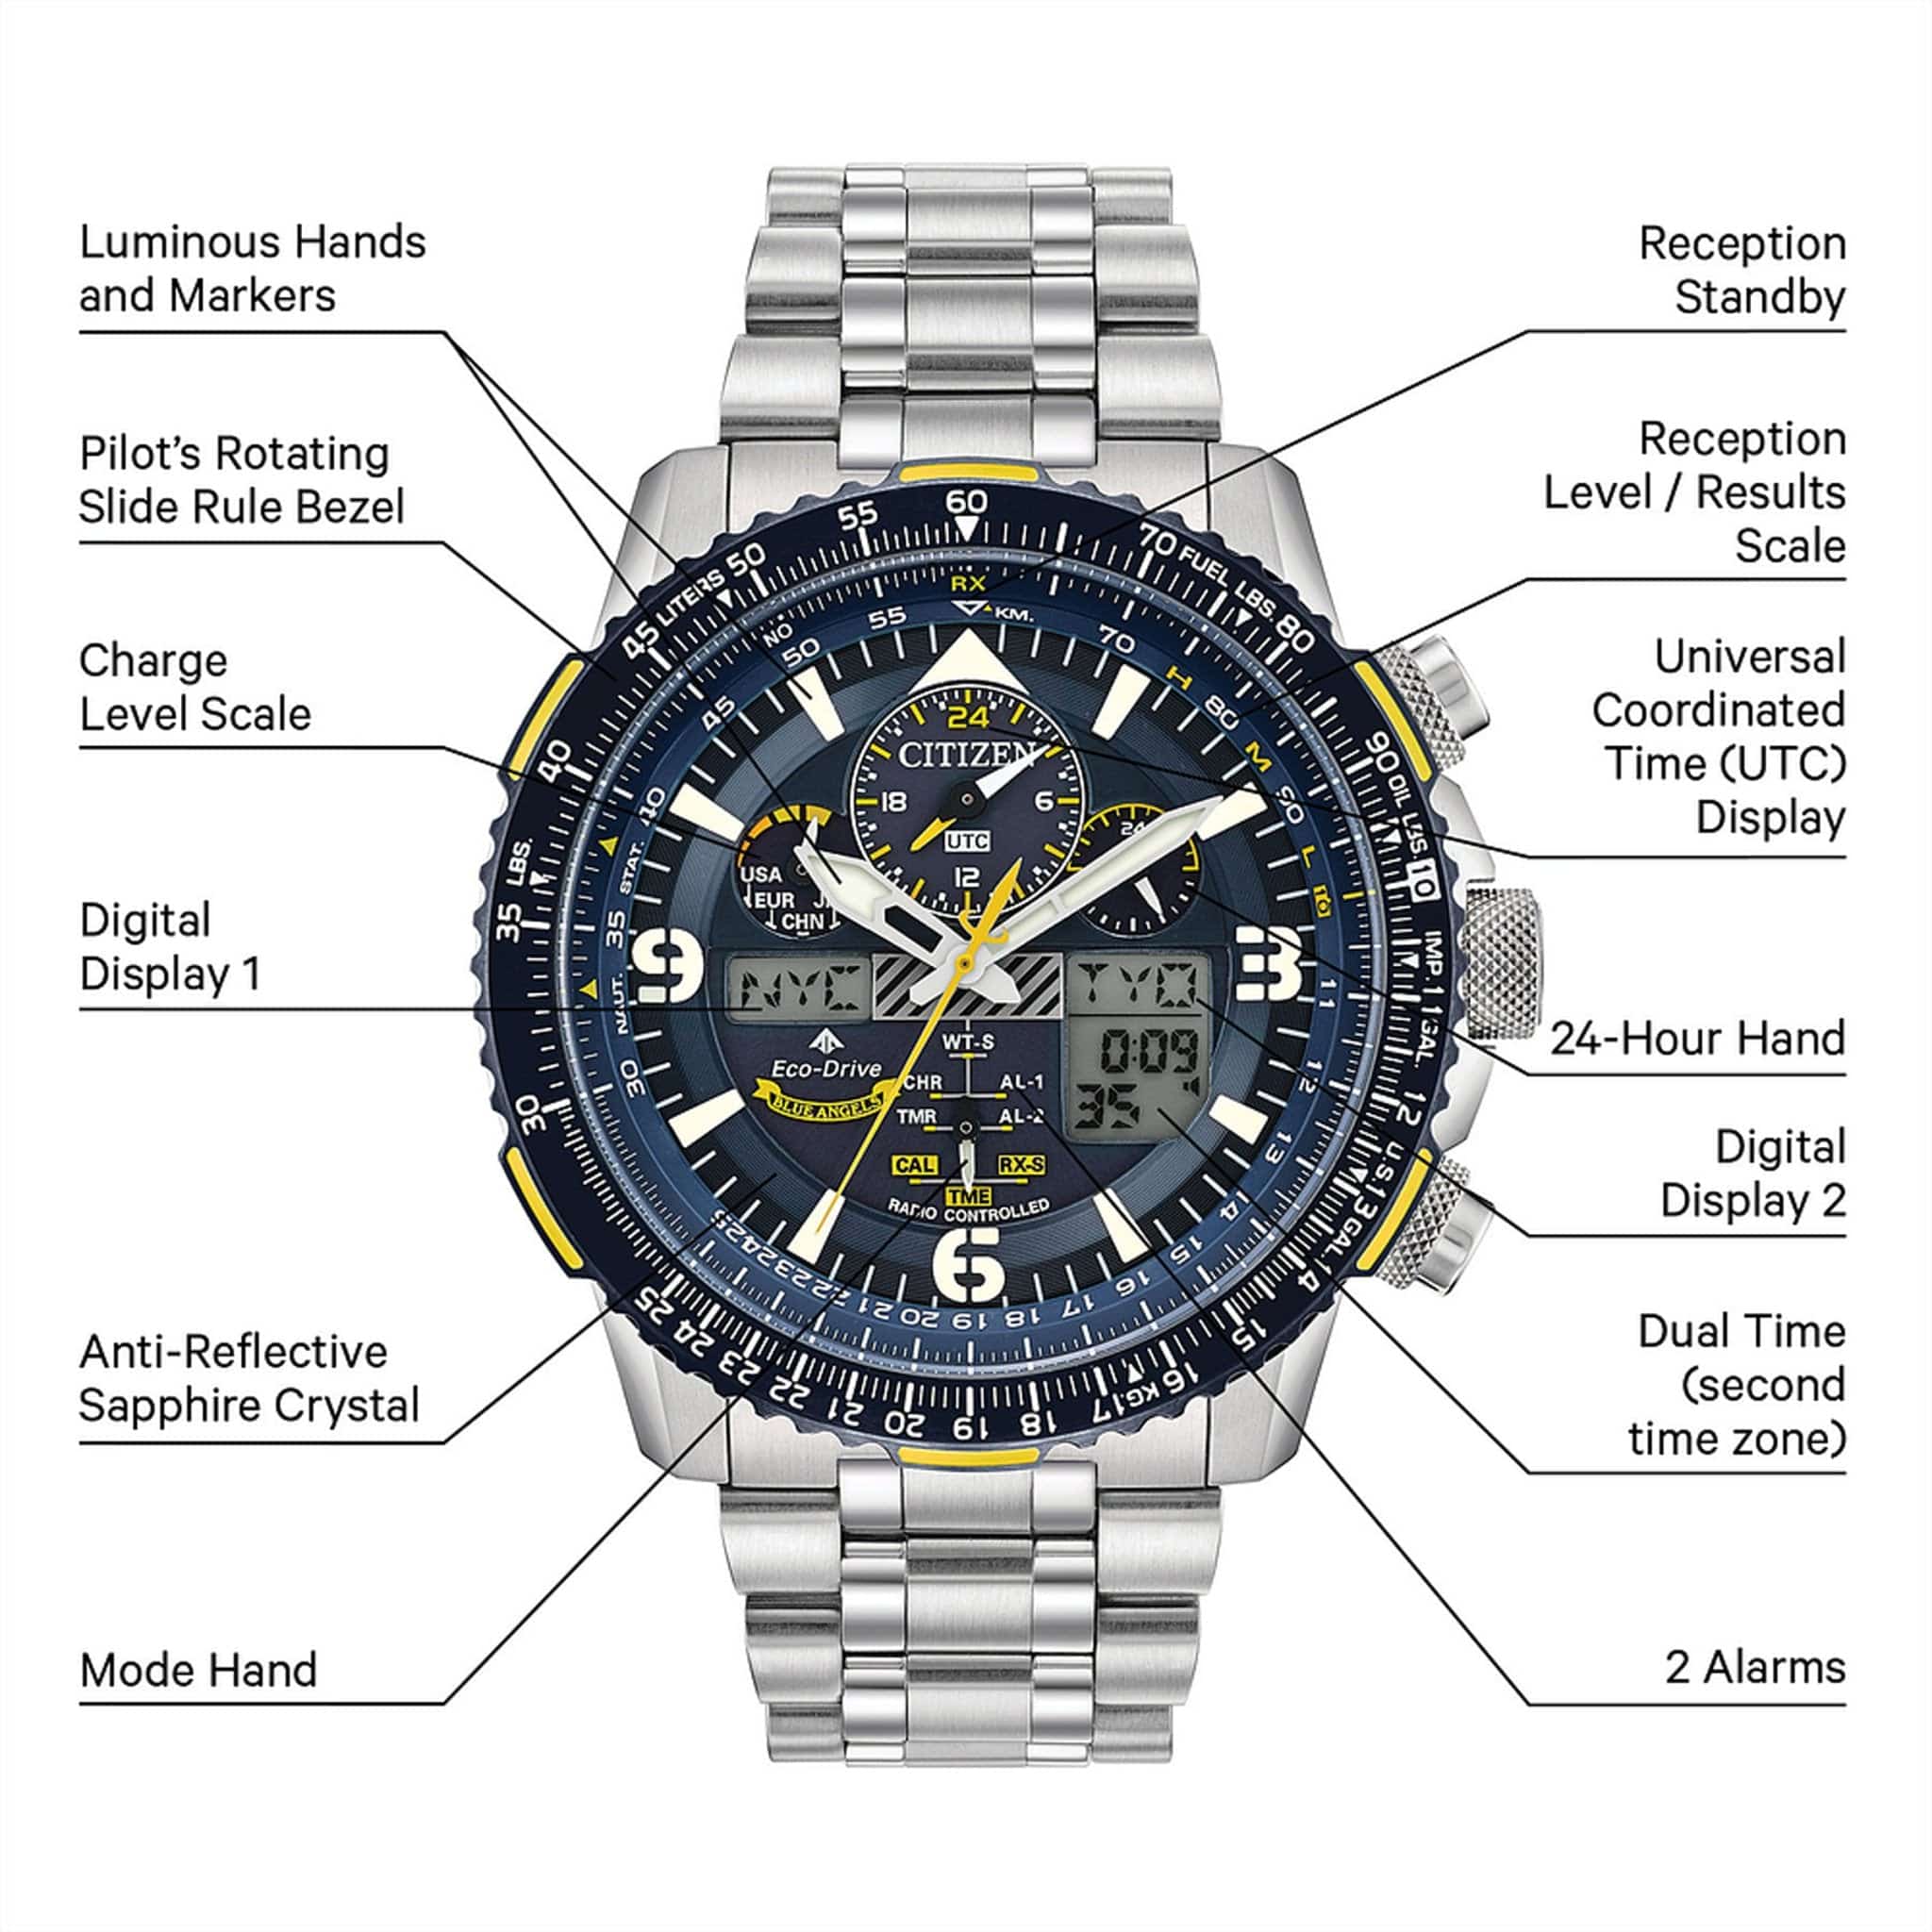 Citizen Promaster Skyhawk A-T Blue Dial Stainless Steel Bracelet Watch (External E6B) JY8078-52L